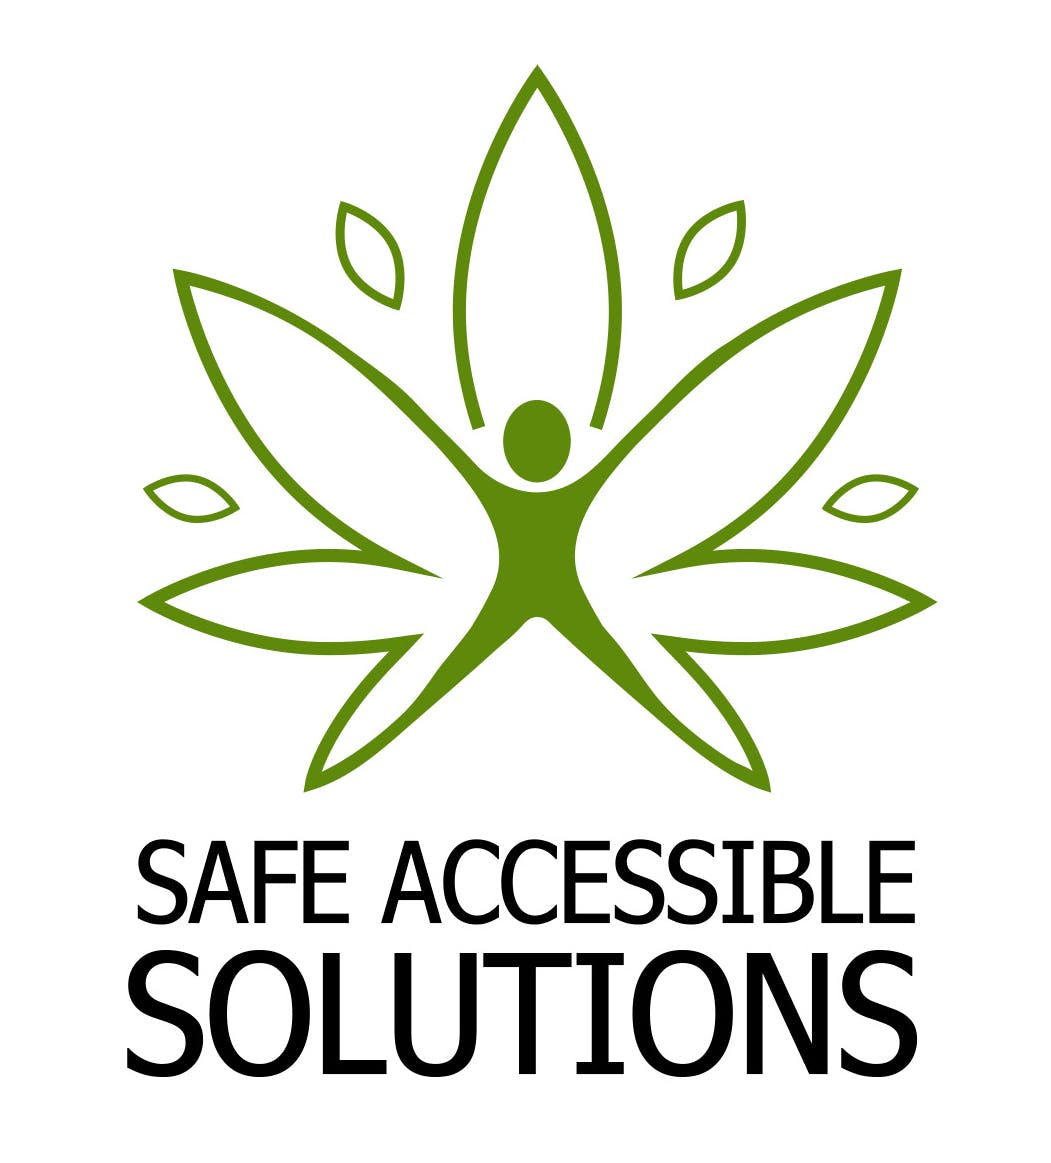 Safe Accessible Solutions - Medical Marijuana Doctors - Cannabizme.com